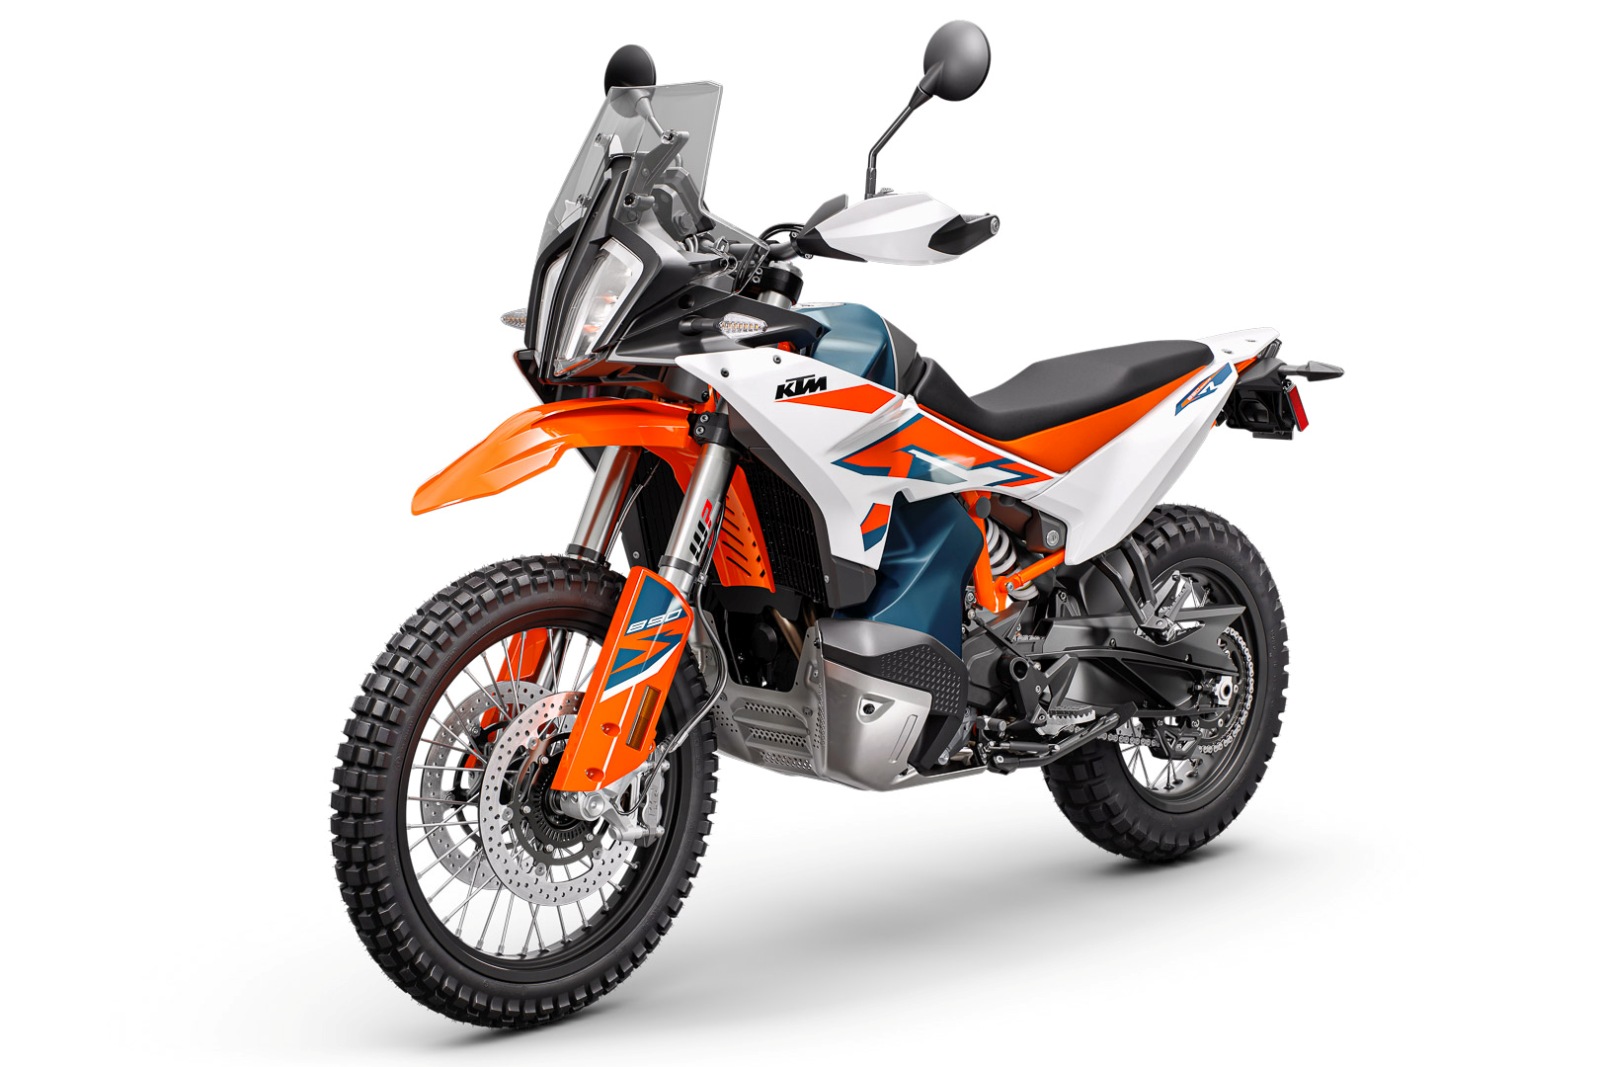 2023-ktm-890-adventure-r-first-look-adv-adventure-motorcycle-dual-sport-dirt-bike-16.jpg